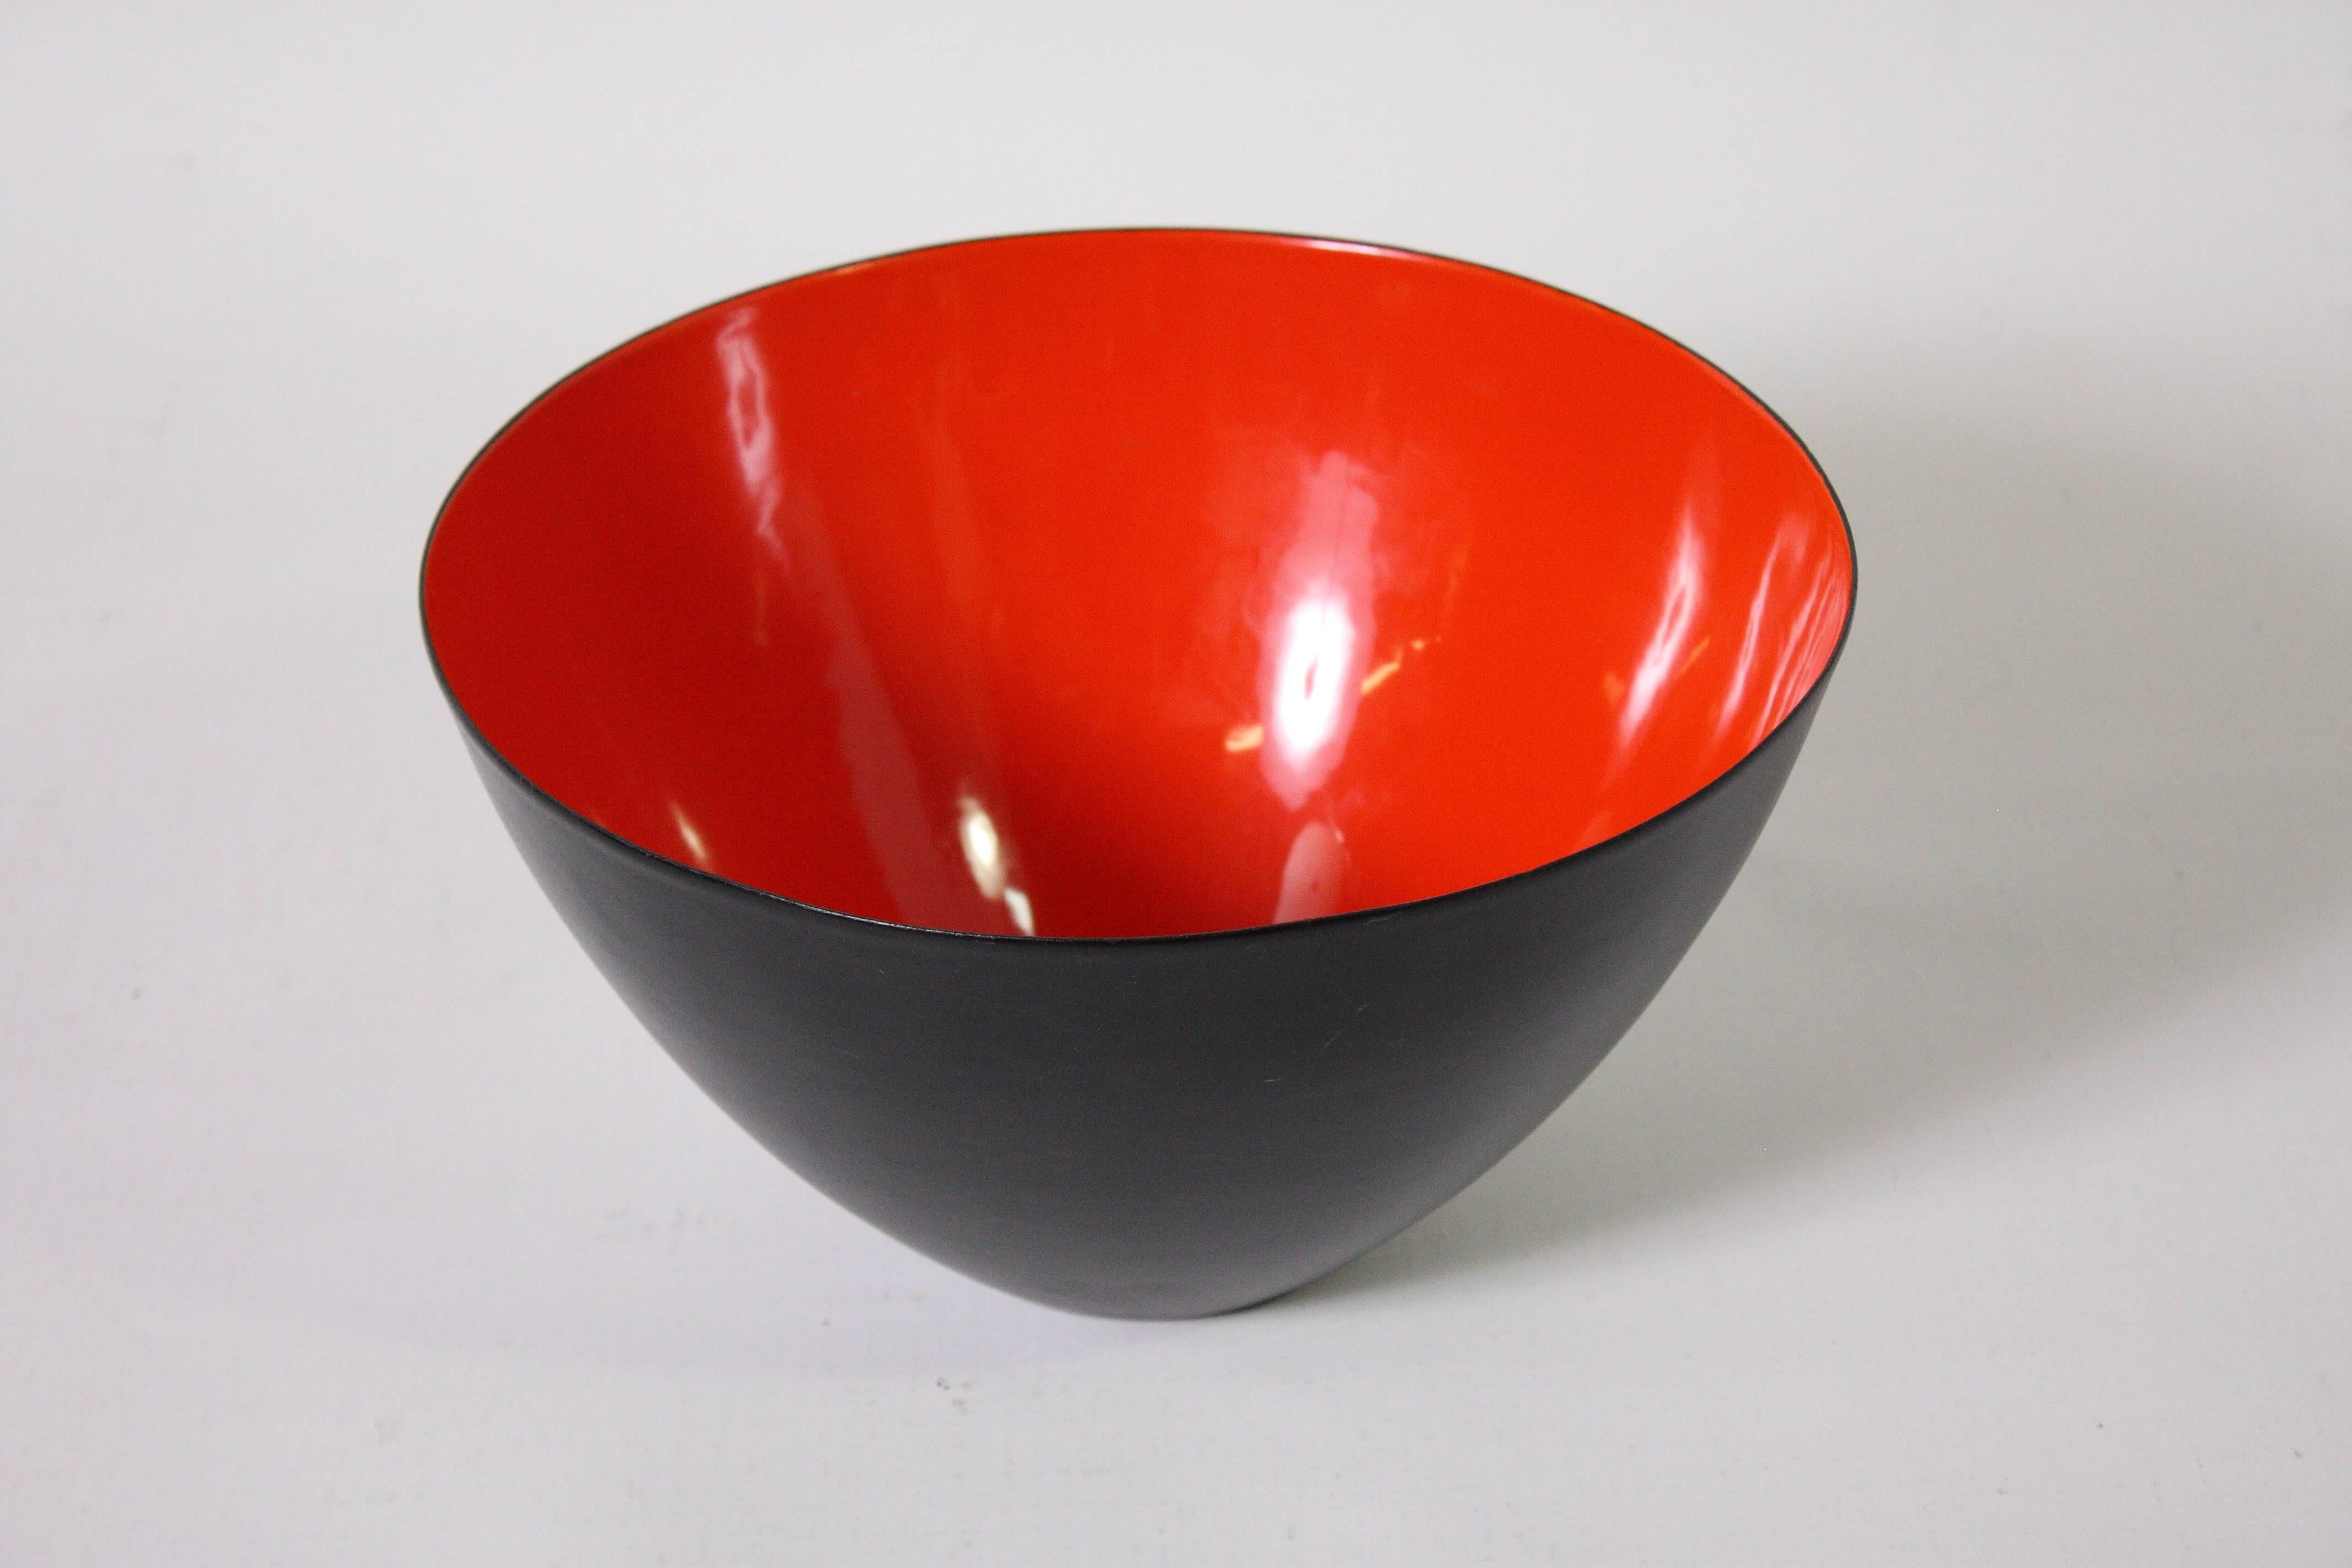 Steel and enamel bowl by Herbert Krenchel for Krenit.